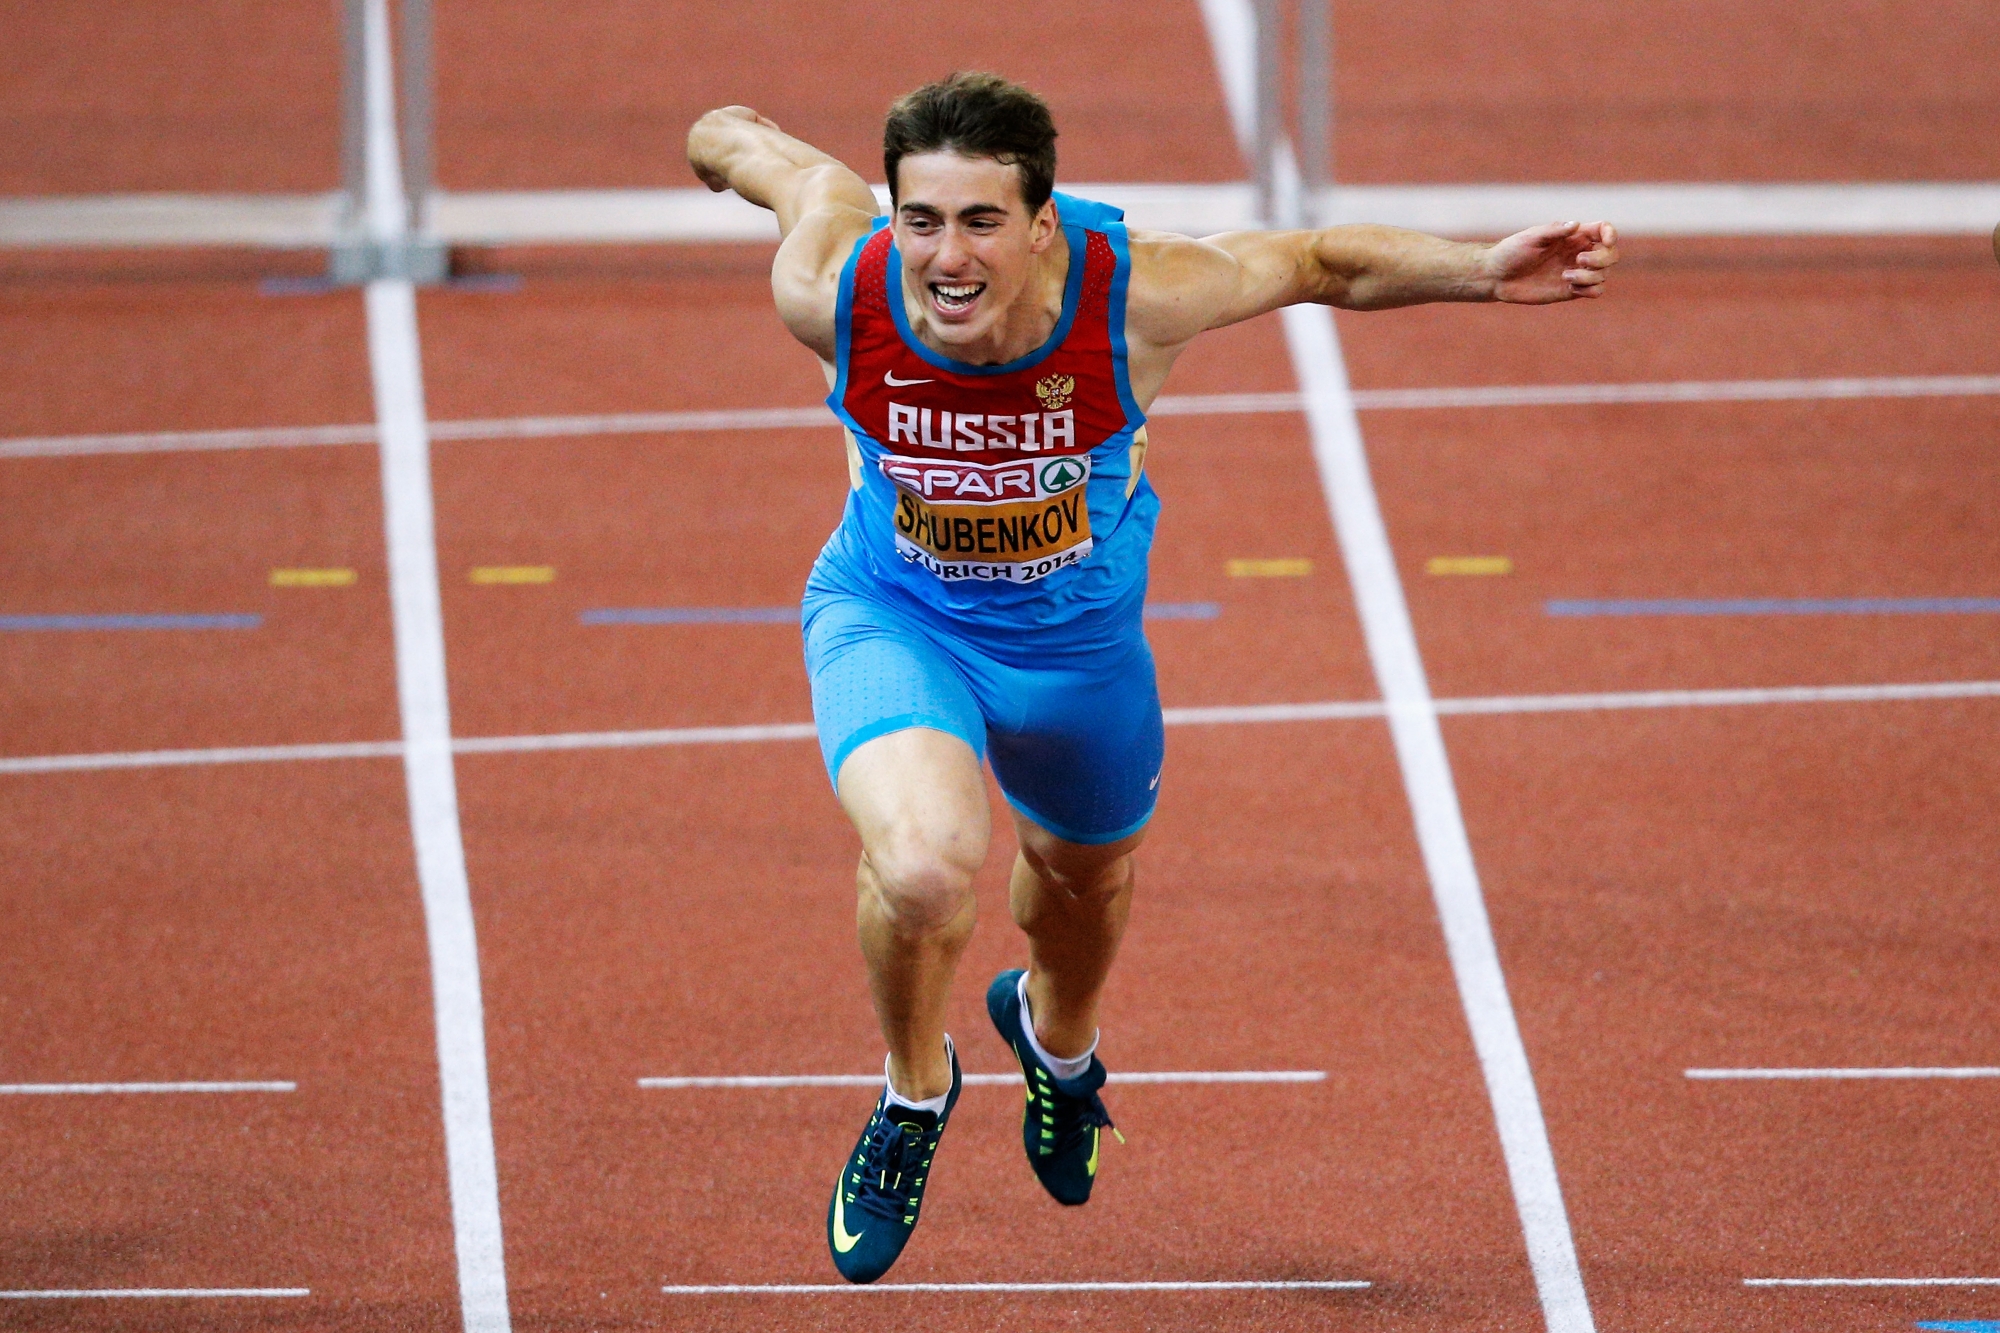 За 1 час спортсмен пробежал 8910 метров. Шубенков легкая атлетика.